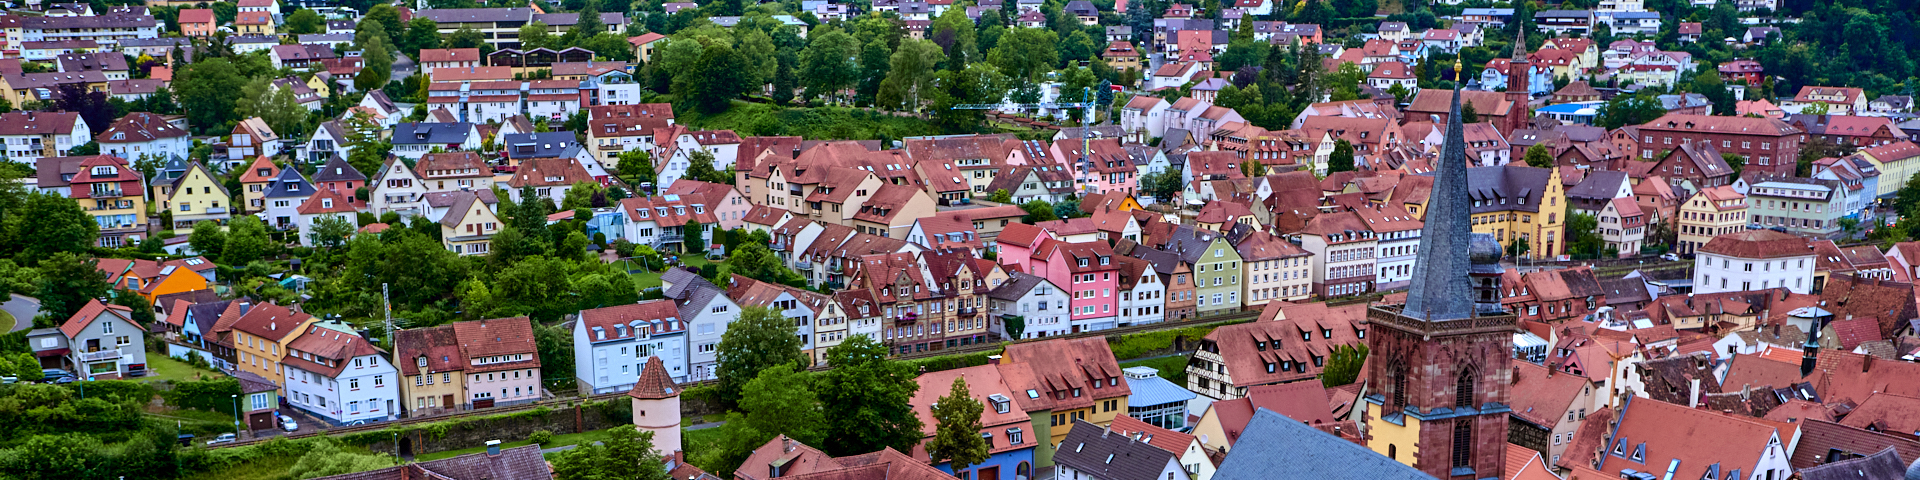 Stadtansicht von Wertheim aus Blickrichtung Burg.